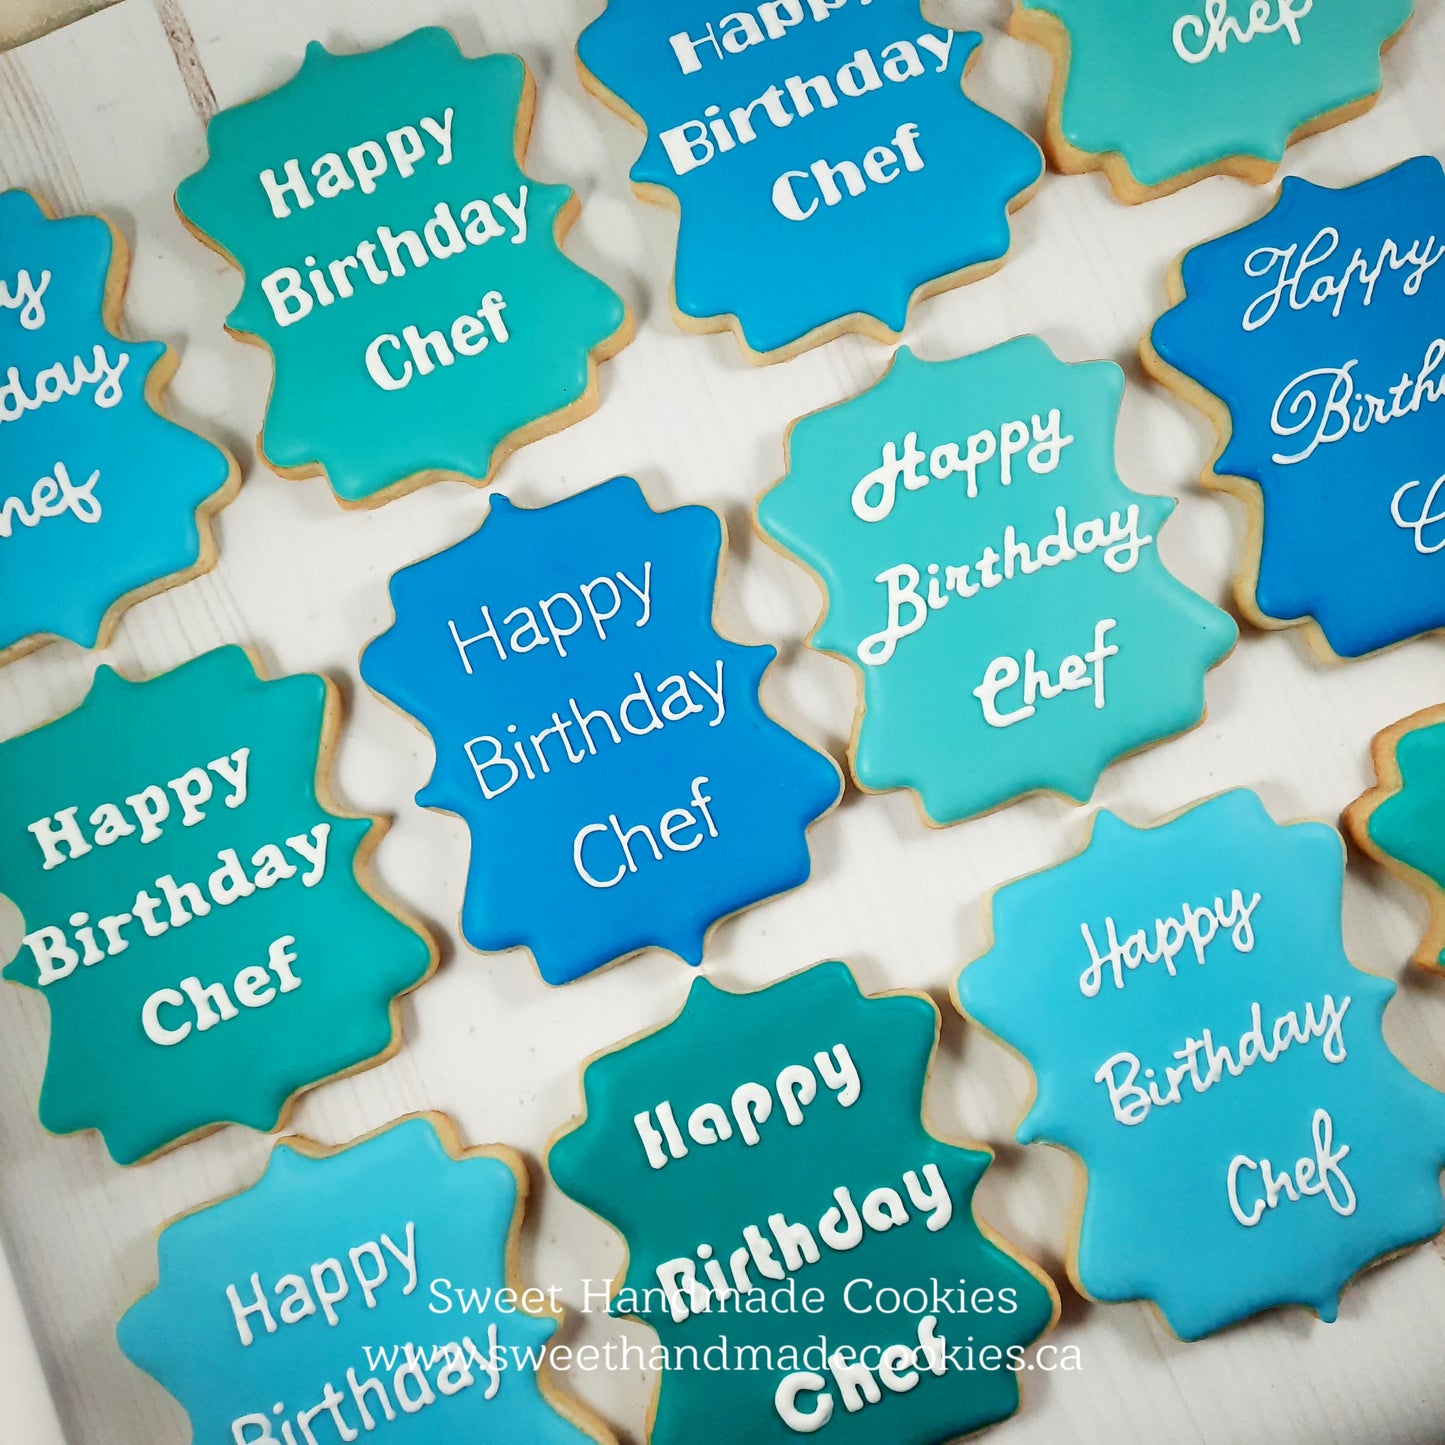 Happy Birthday Chef Cookies